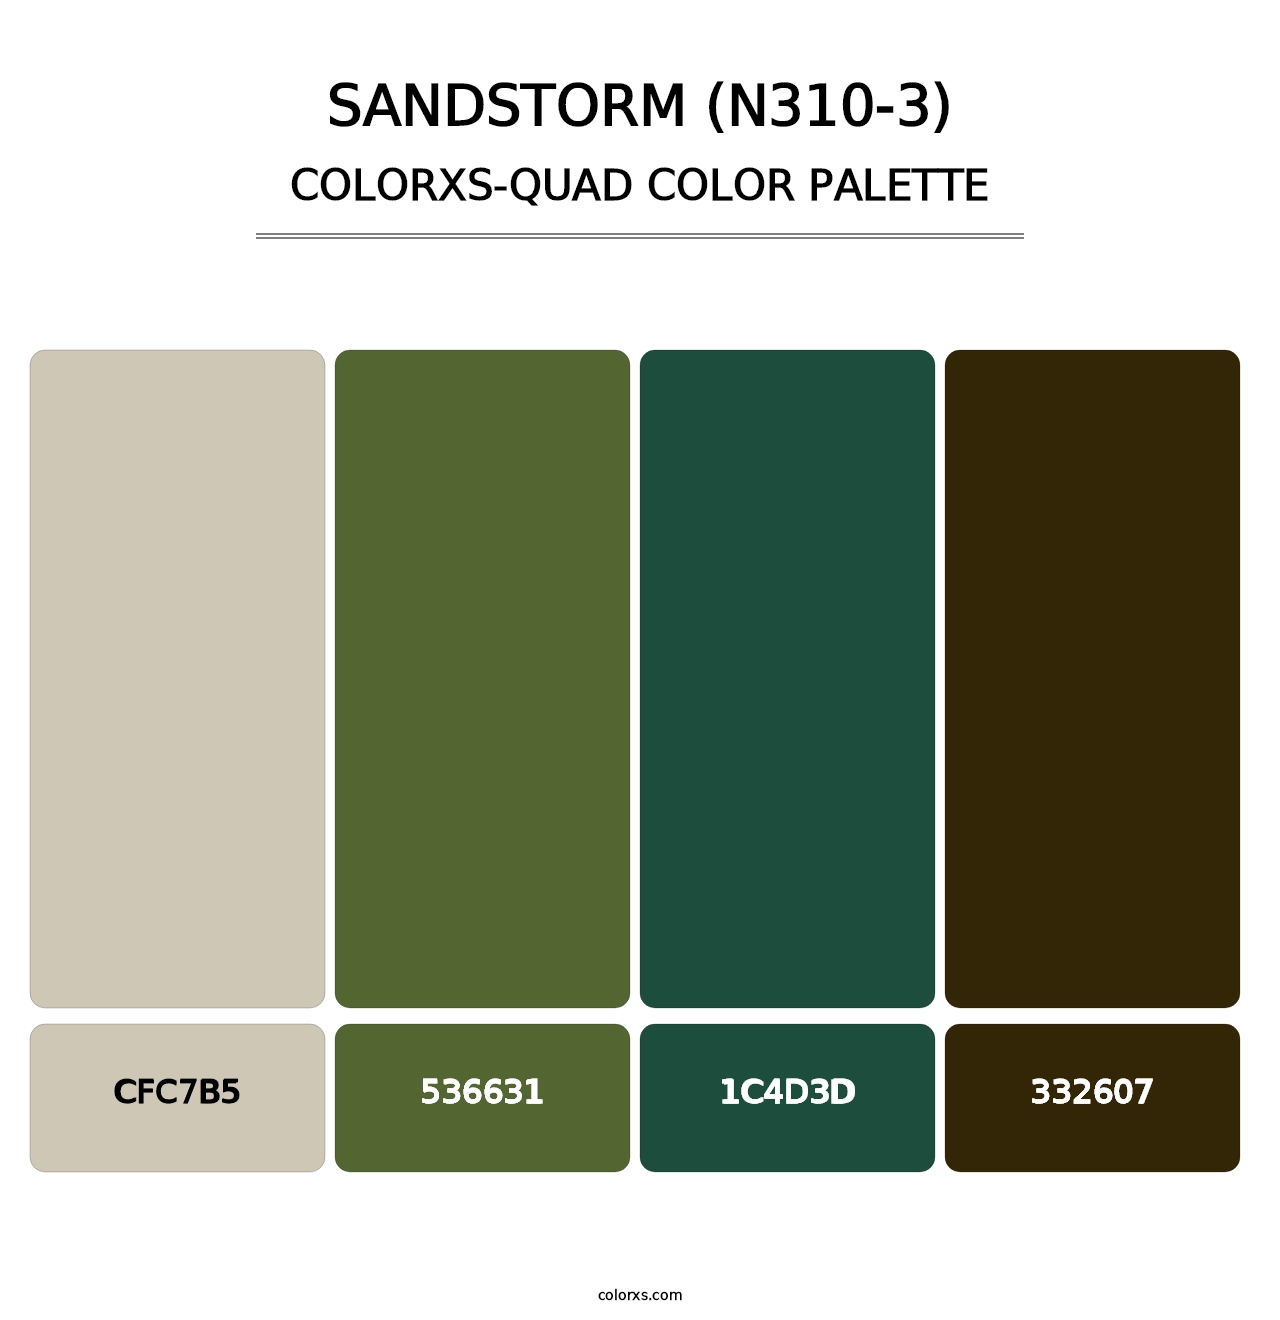 Sandstorm (N310-3) - Colorxs Quad Palette